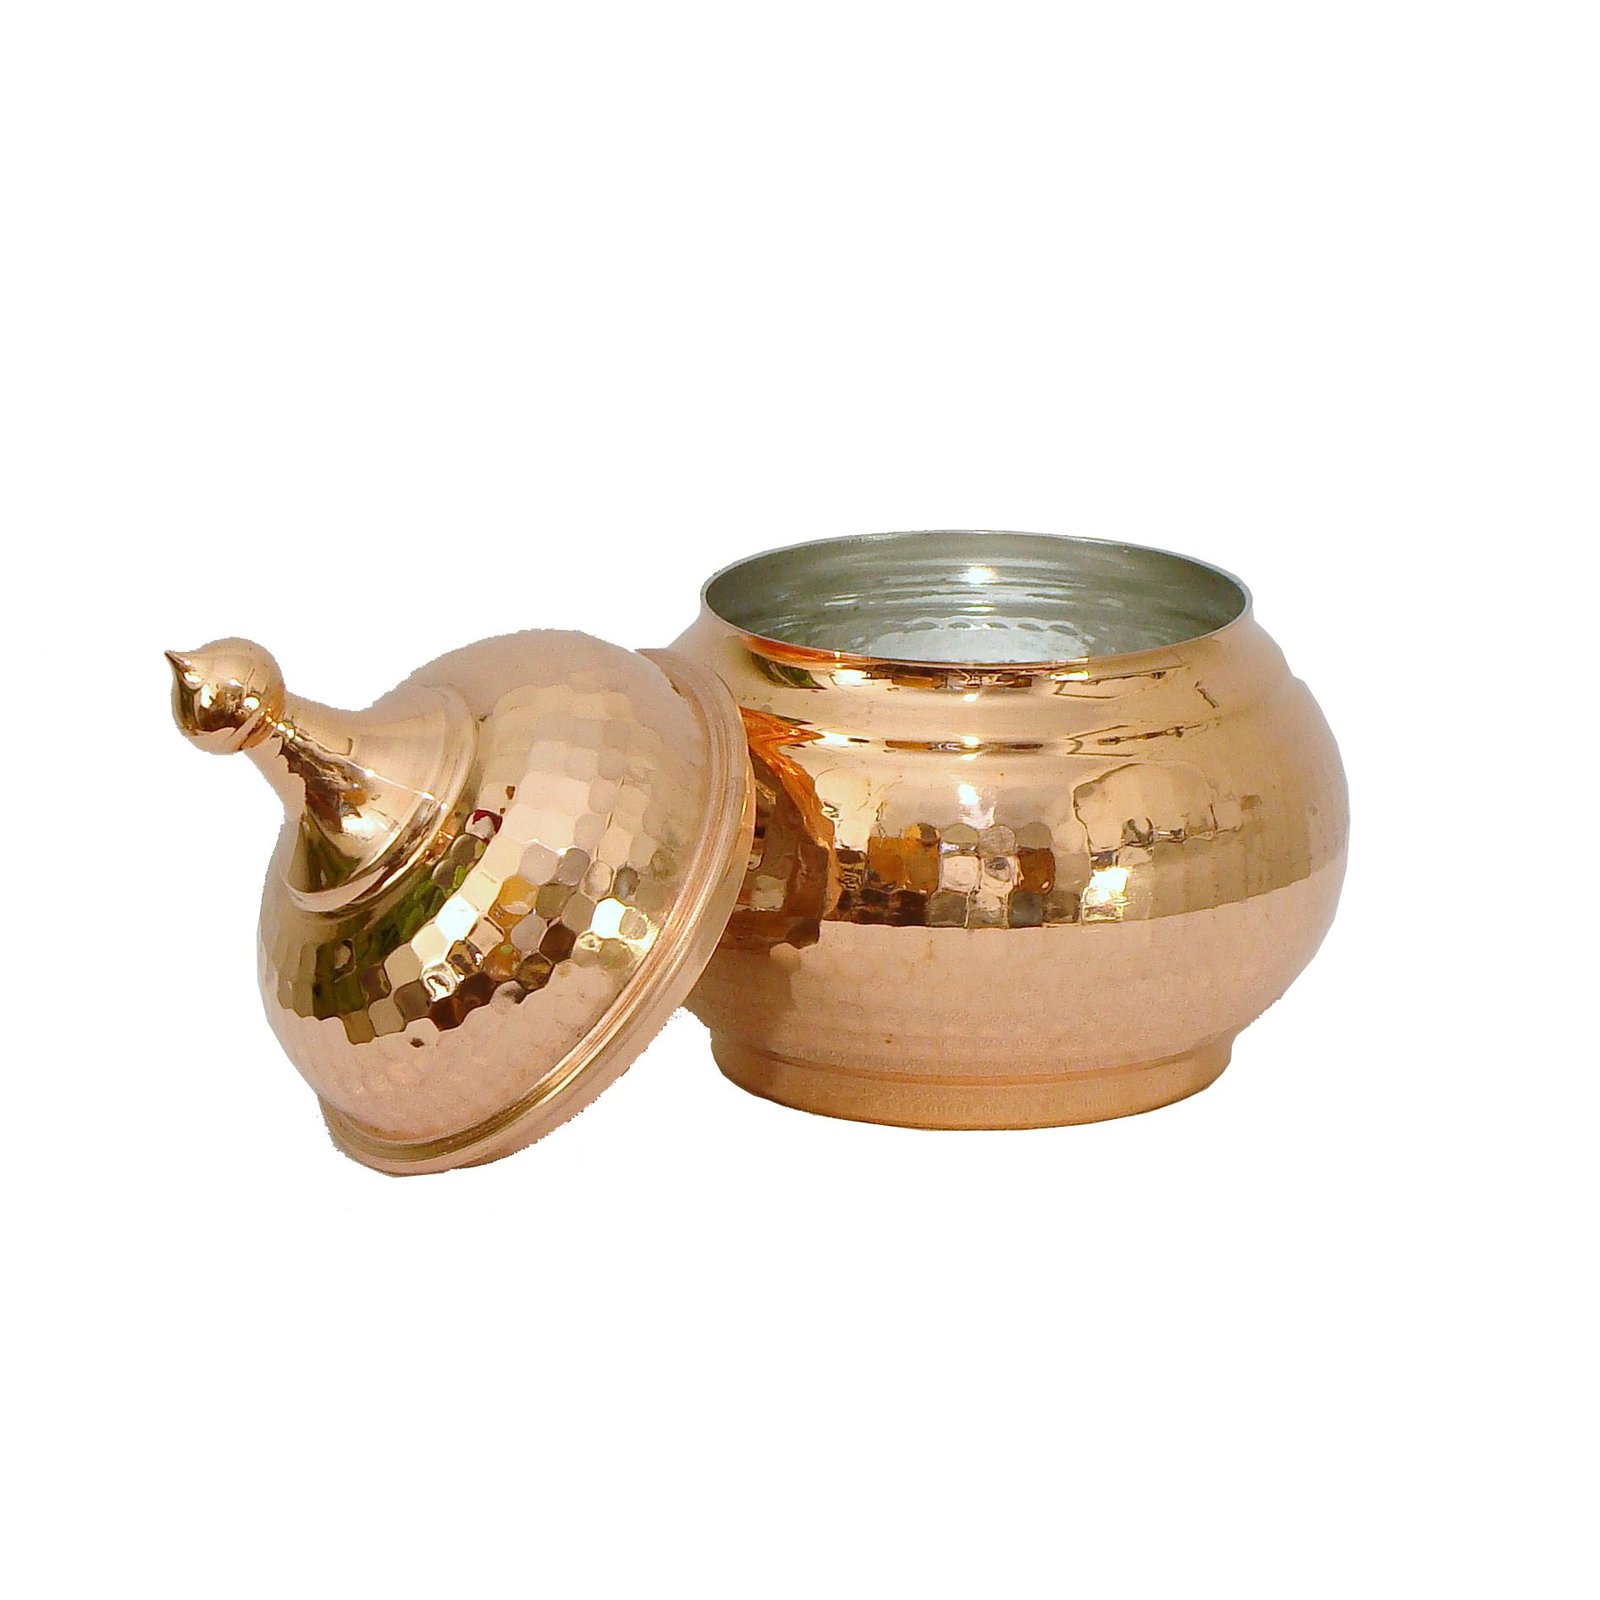 Handicraft Copper container Code 78,bakır el sanatları satın al,bakır eşya satın al